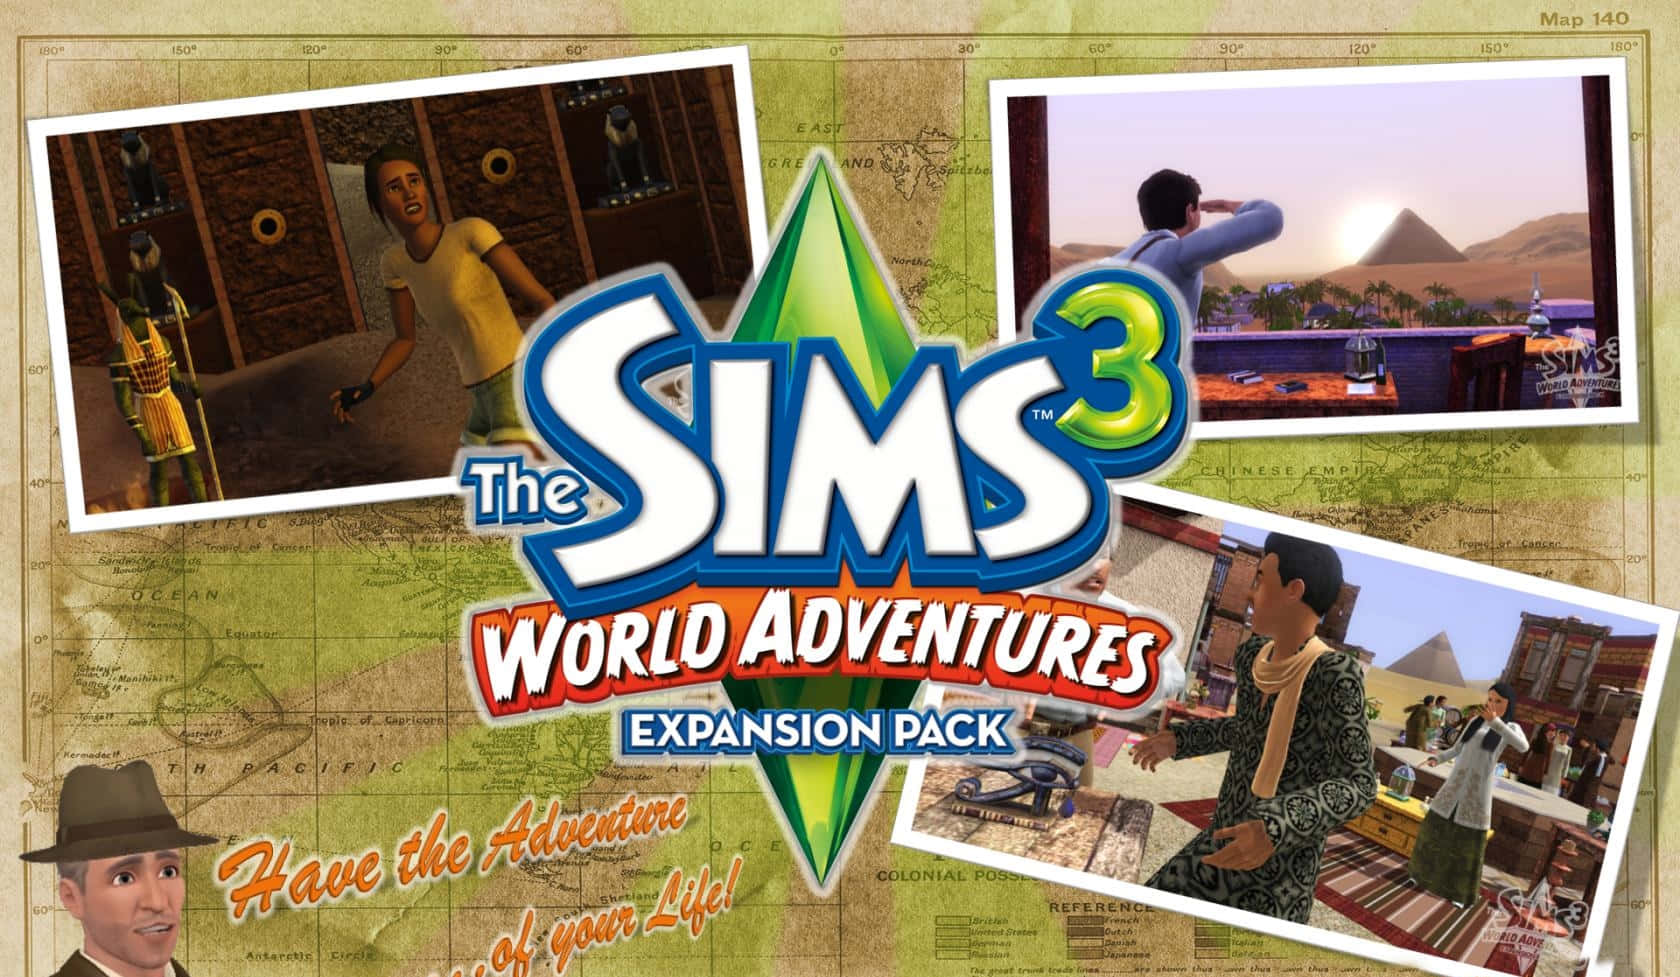 Gördig Redo För En Spännande Ny Upplevelse - Med The Sims 3. Wallpaper